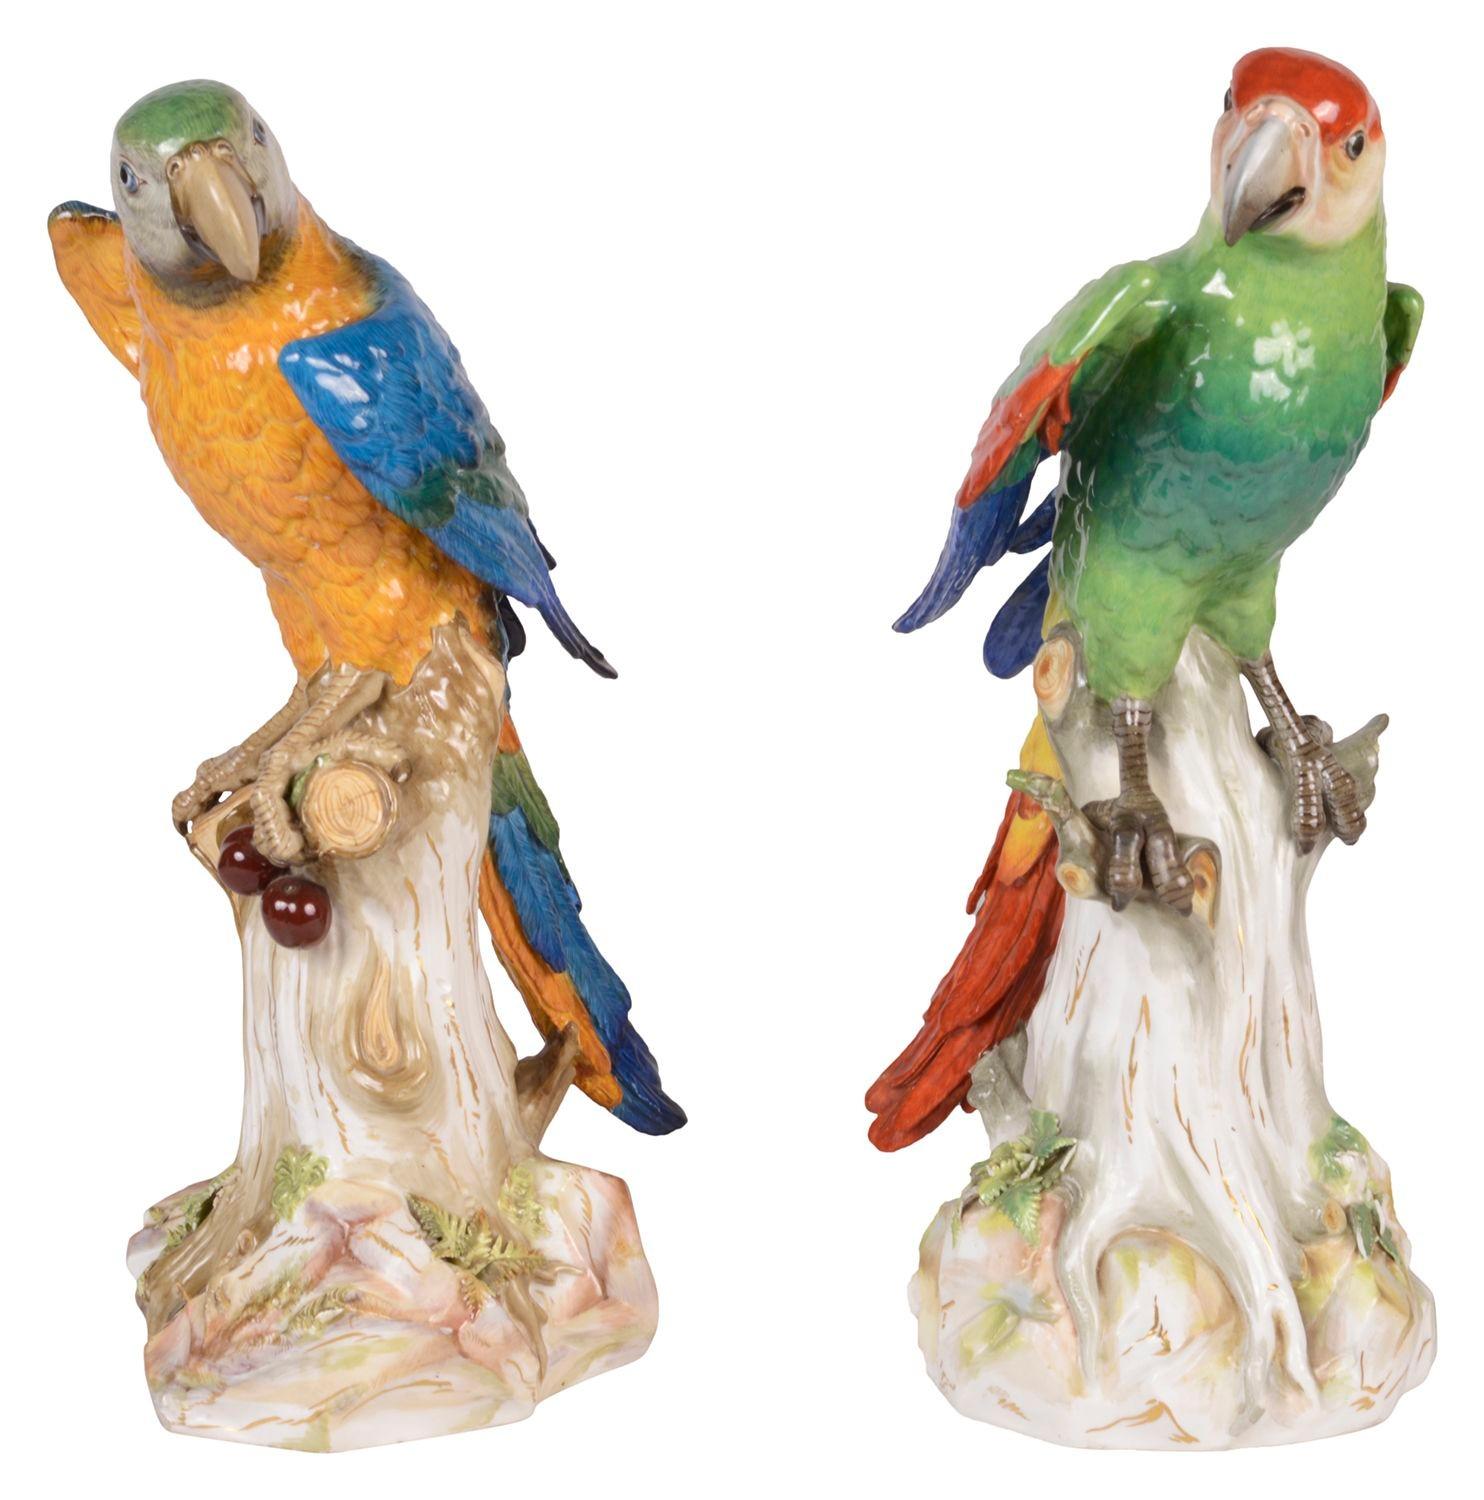 Ein großes und beeindruckendes Paar wunderbar farbenfroher, naturgetreu modellierter Papageien, von denen einer Kirschen in den Füßen hält, beide auf Baumstümpfen sitzend.
Blaue gekreuzte Schwerter auf der Unterseite. Maße: 43cm hoch.
 
Charge